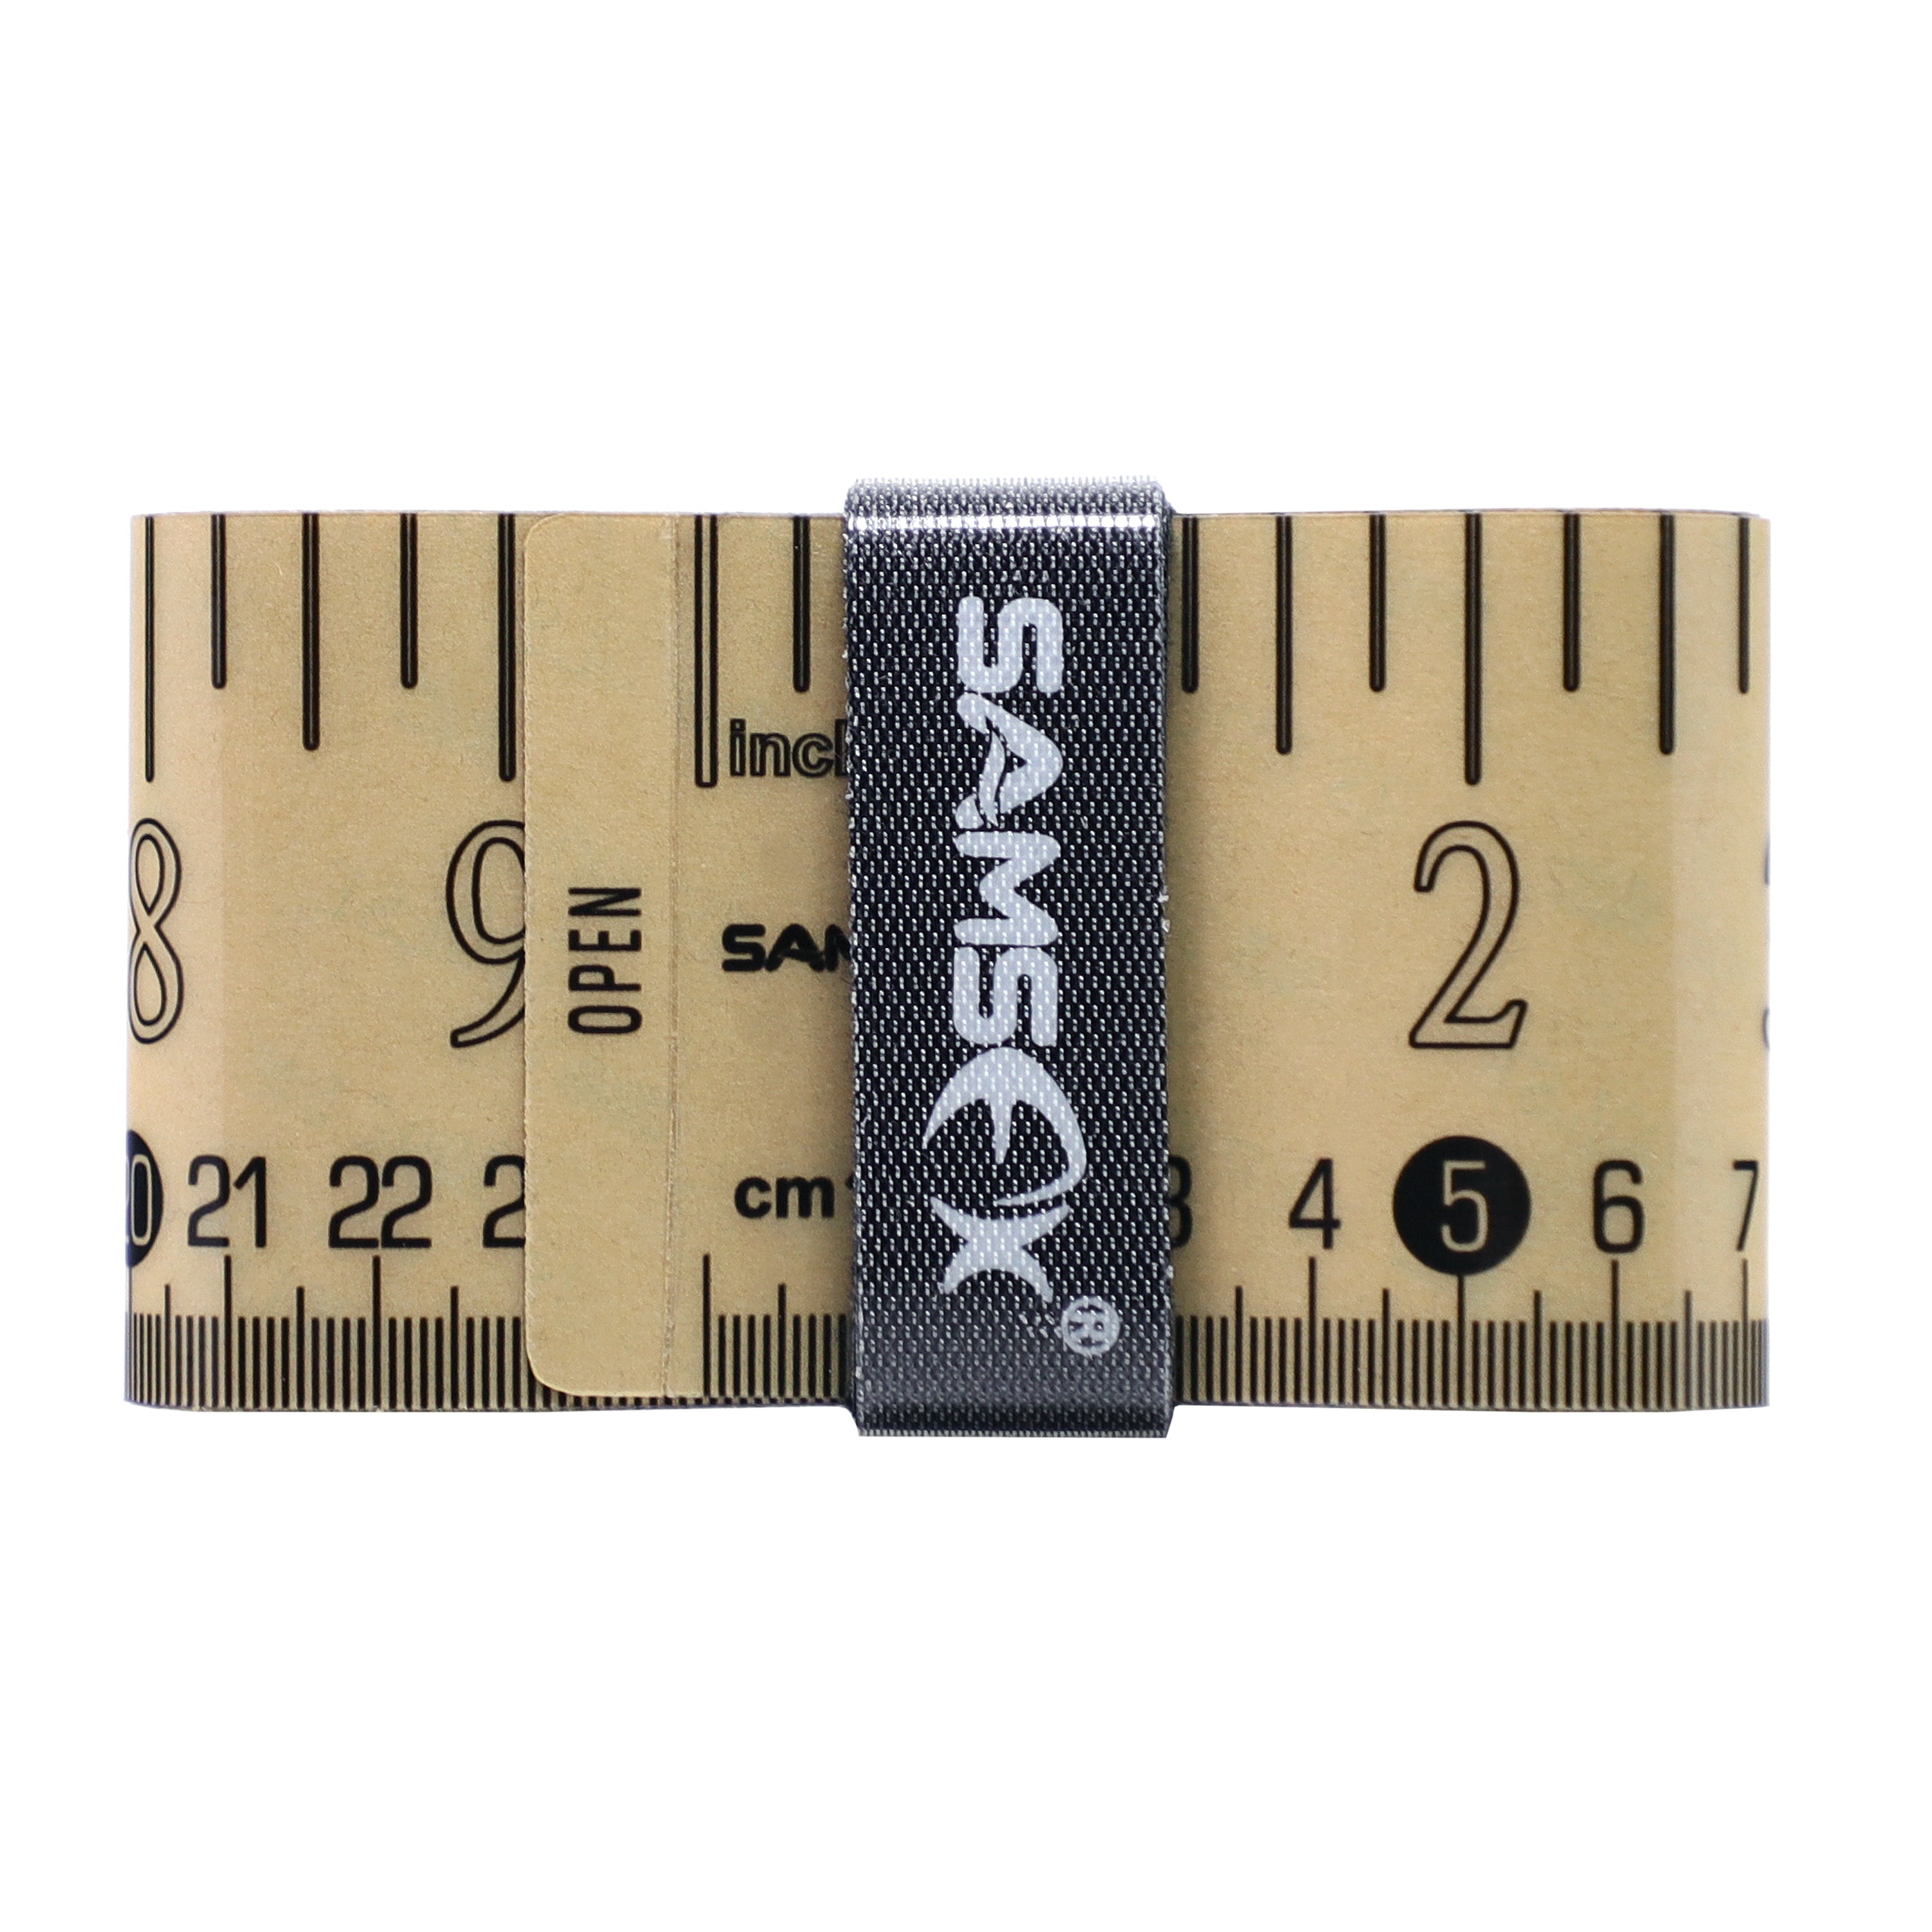 SAMSFX Fishing Self Adhesive Measuring Fish Ruler Tape Sticker